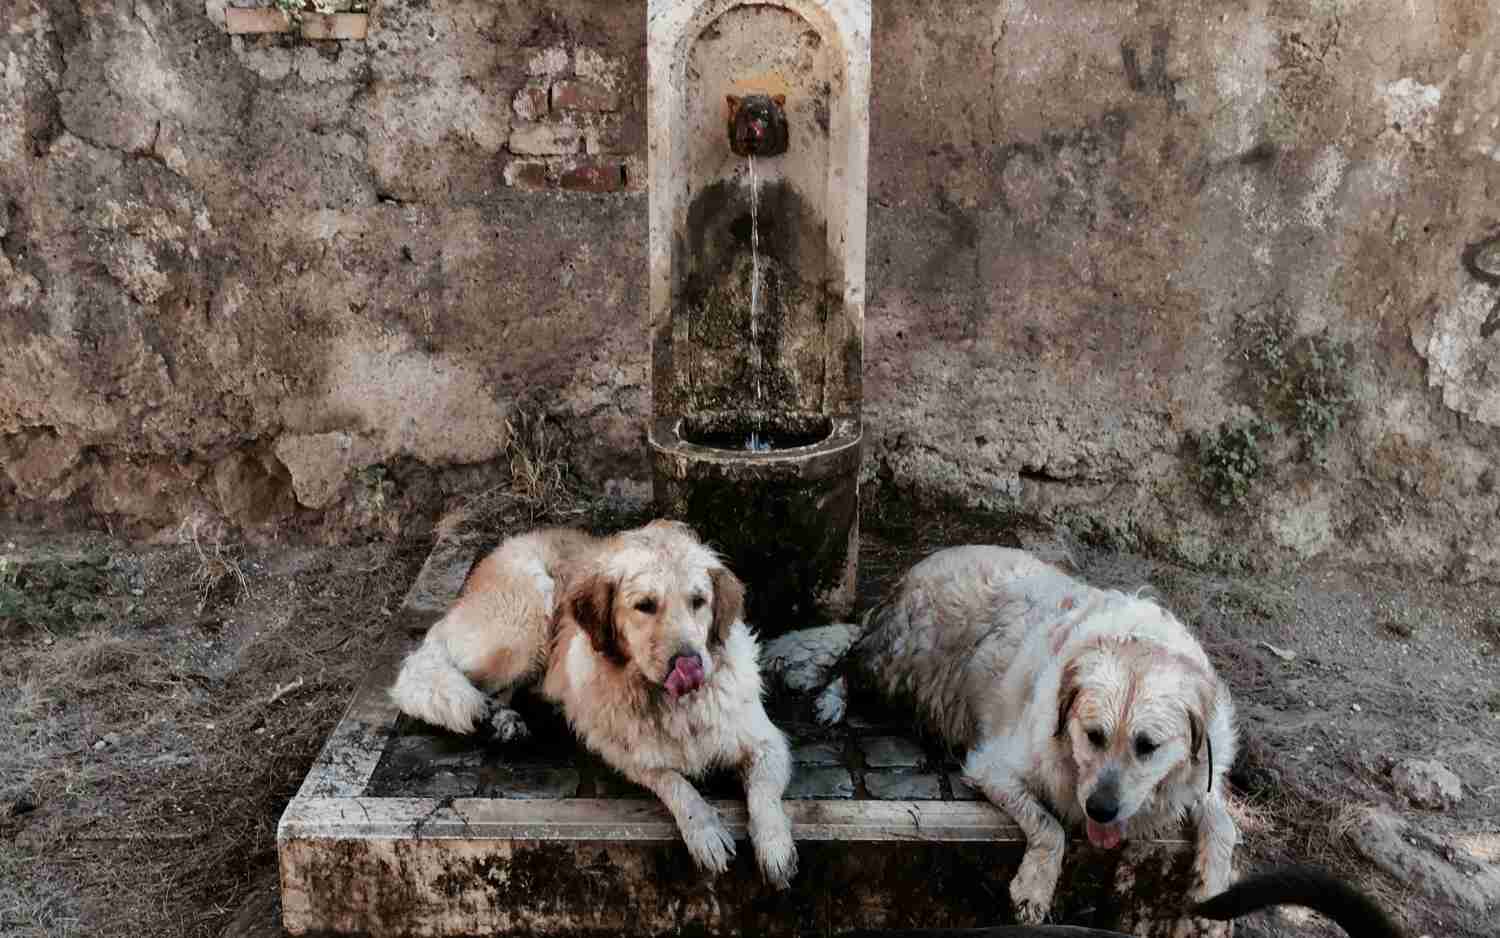 Perros se refrescan en una fuente pública durante una inusual ola de calor en Roma.